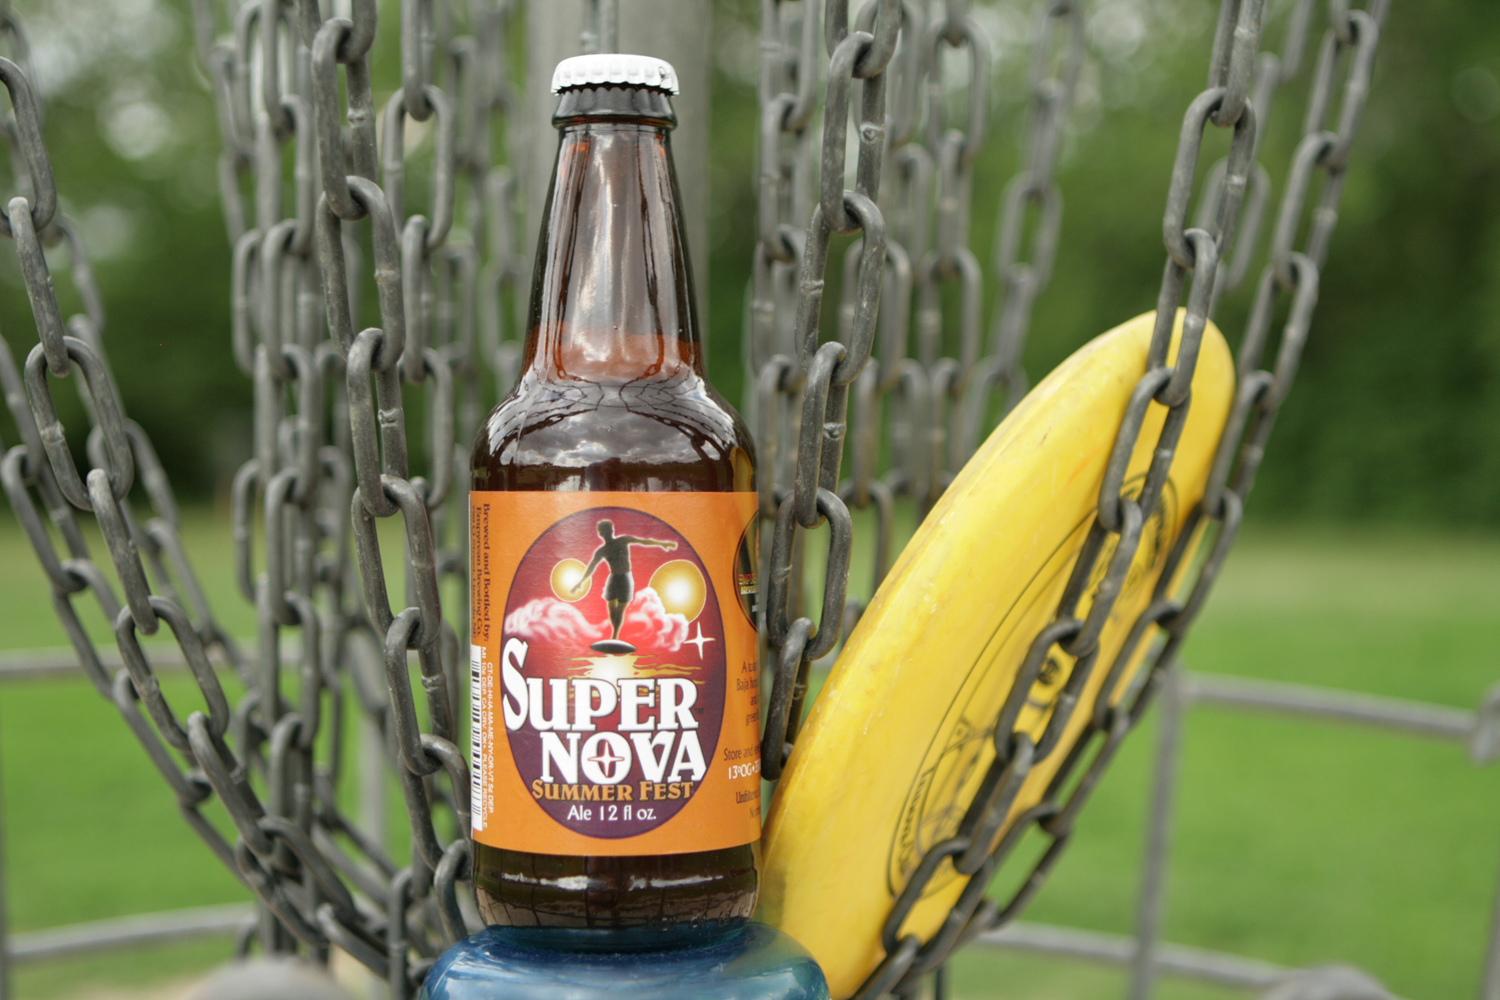 Find Super Nova summer beer on the disc golf course. 